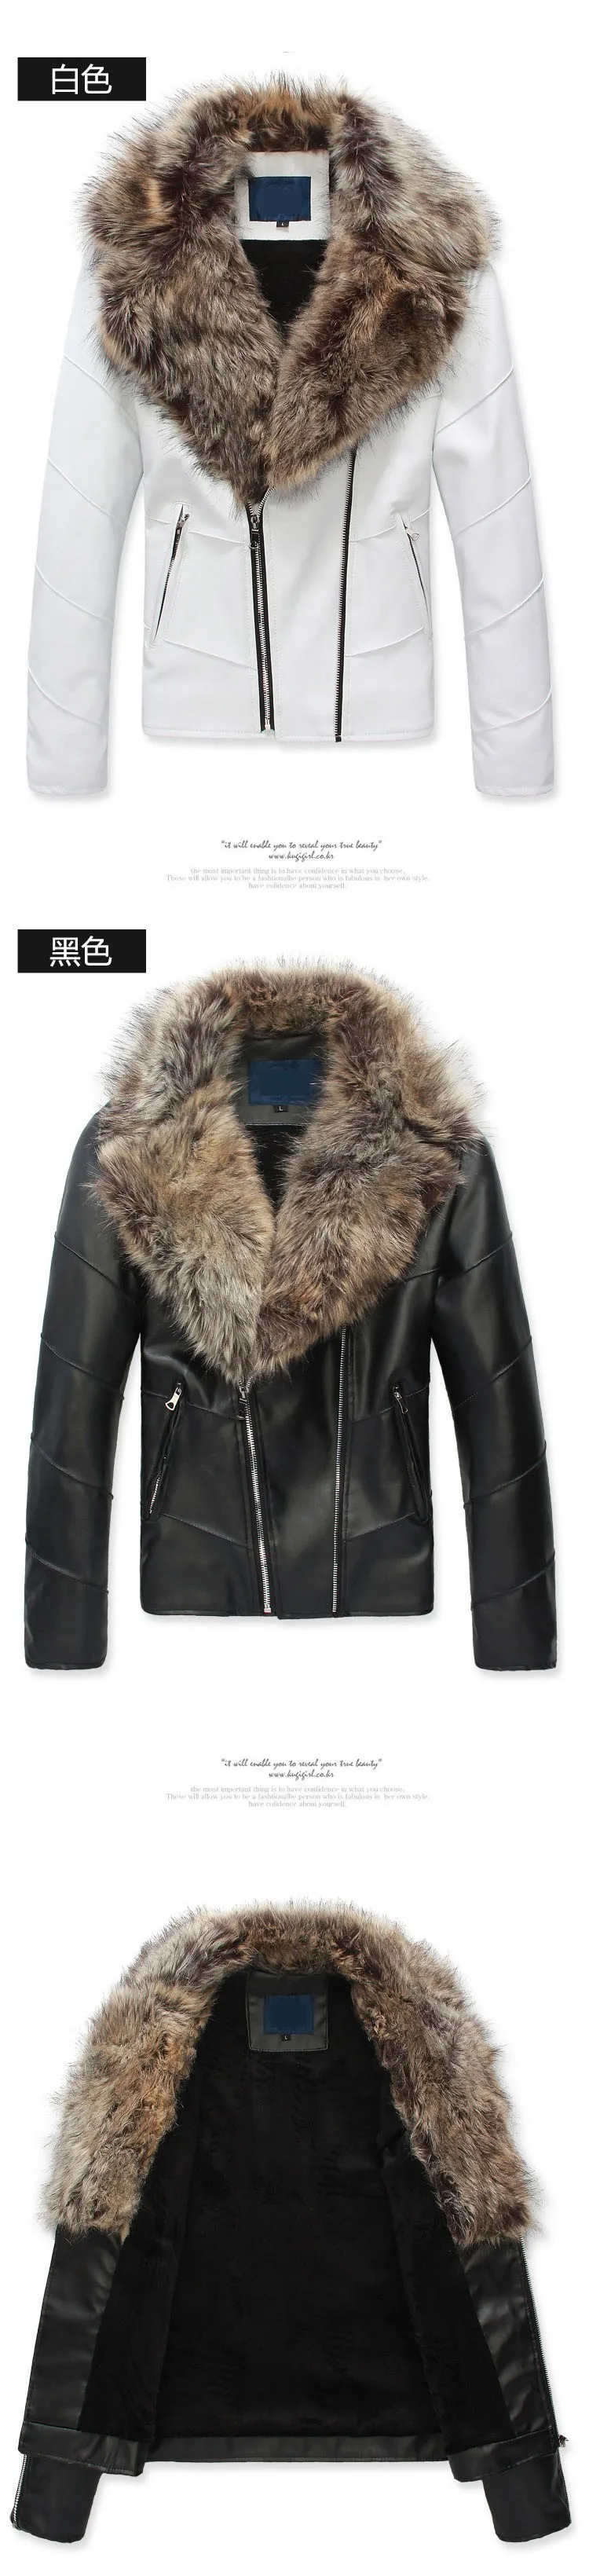 Кожаная мужская куртка, меховое пальто, байкерская куртка, мотоциклетная мода, известный бренд, тонкая мужская кожаная куртка с меховым воротником